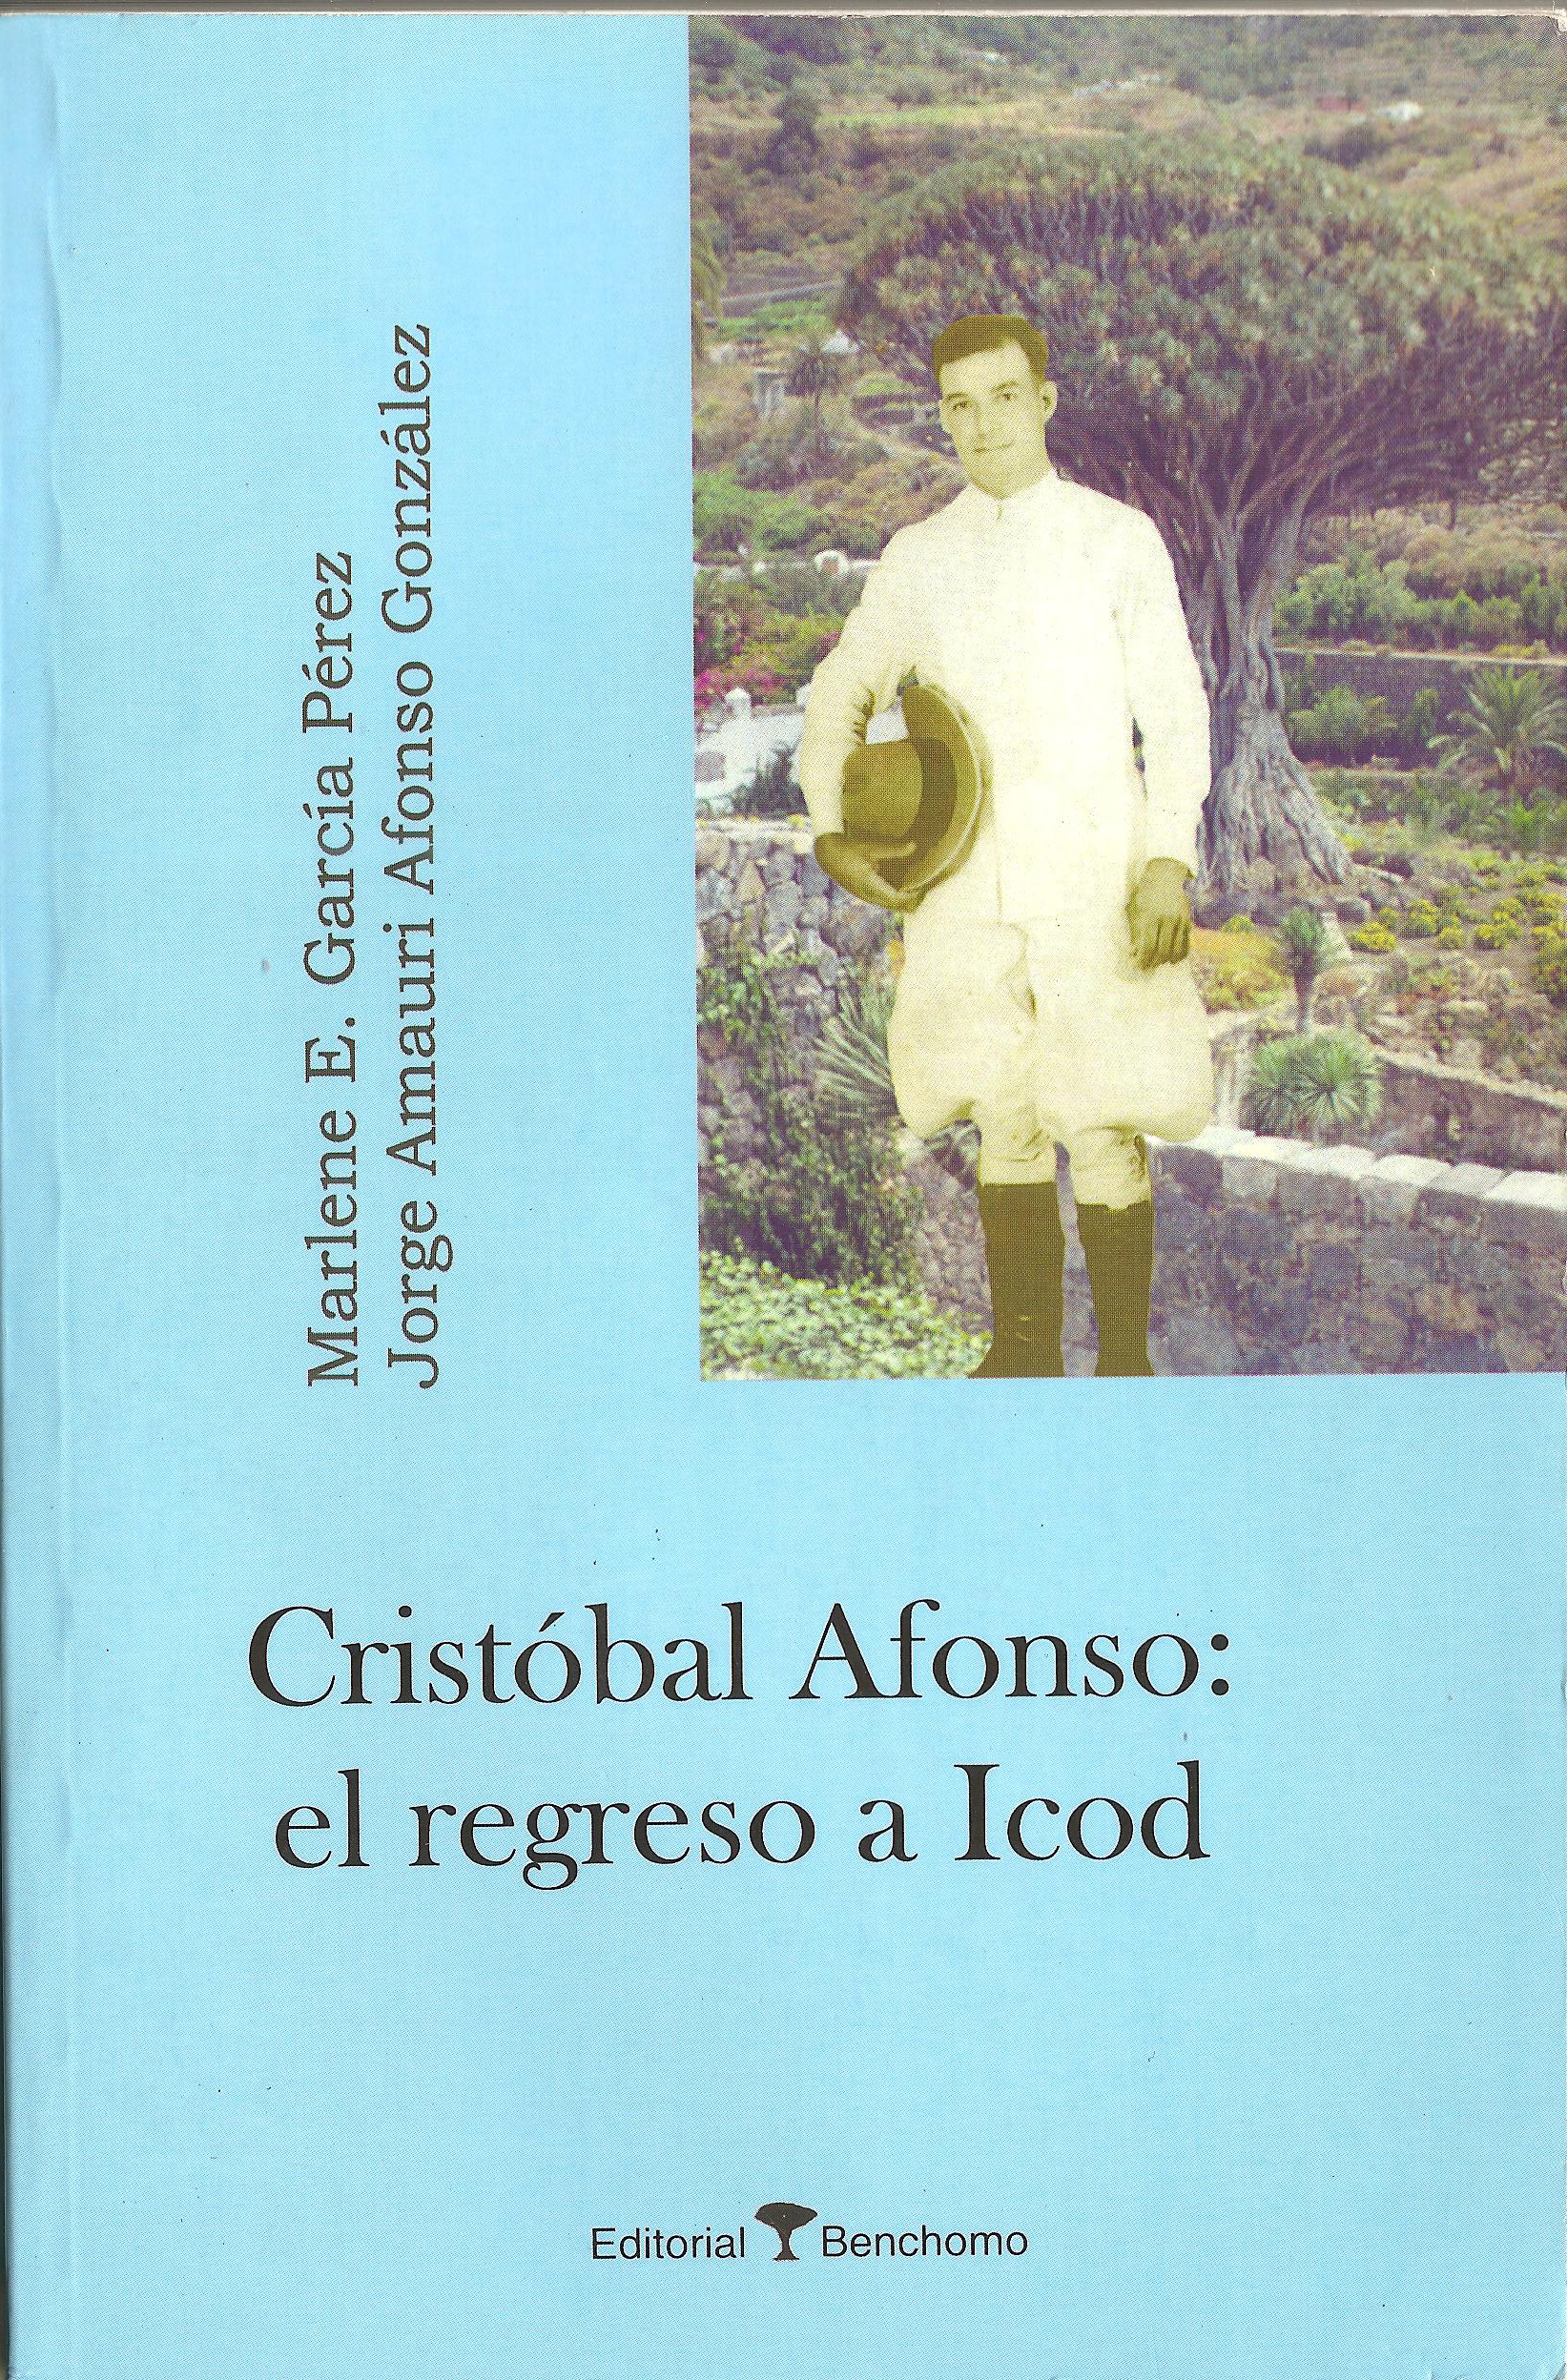 Cristobal-Afonso-el-regreso-de-Icod